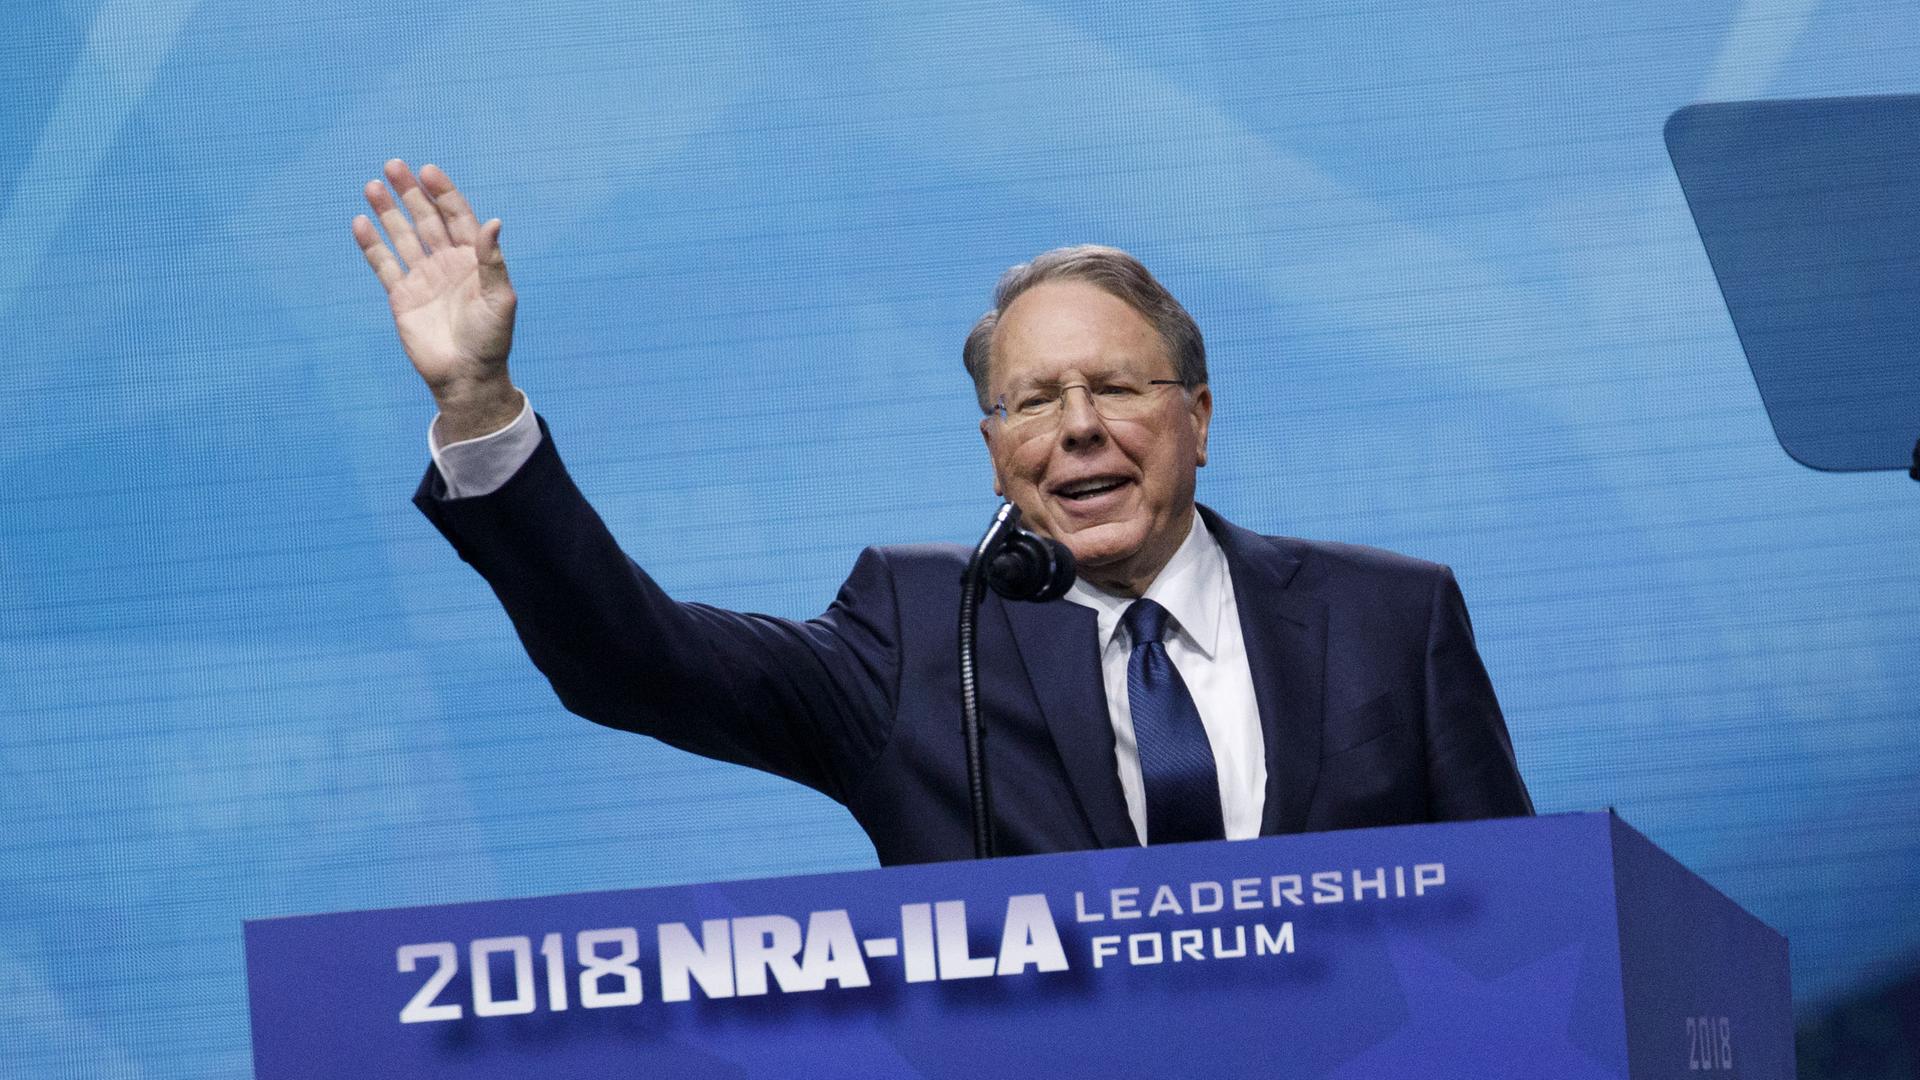 Wayne LaPierre steht hinter einem Rednerpult mit dem Logo der NRA, er winkt mit erhobener rechter Hand in die Menge. Aufnahme vm 04.05.2018 aus Dallas, Texas.